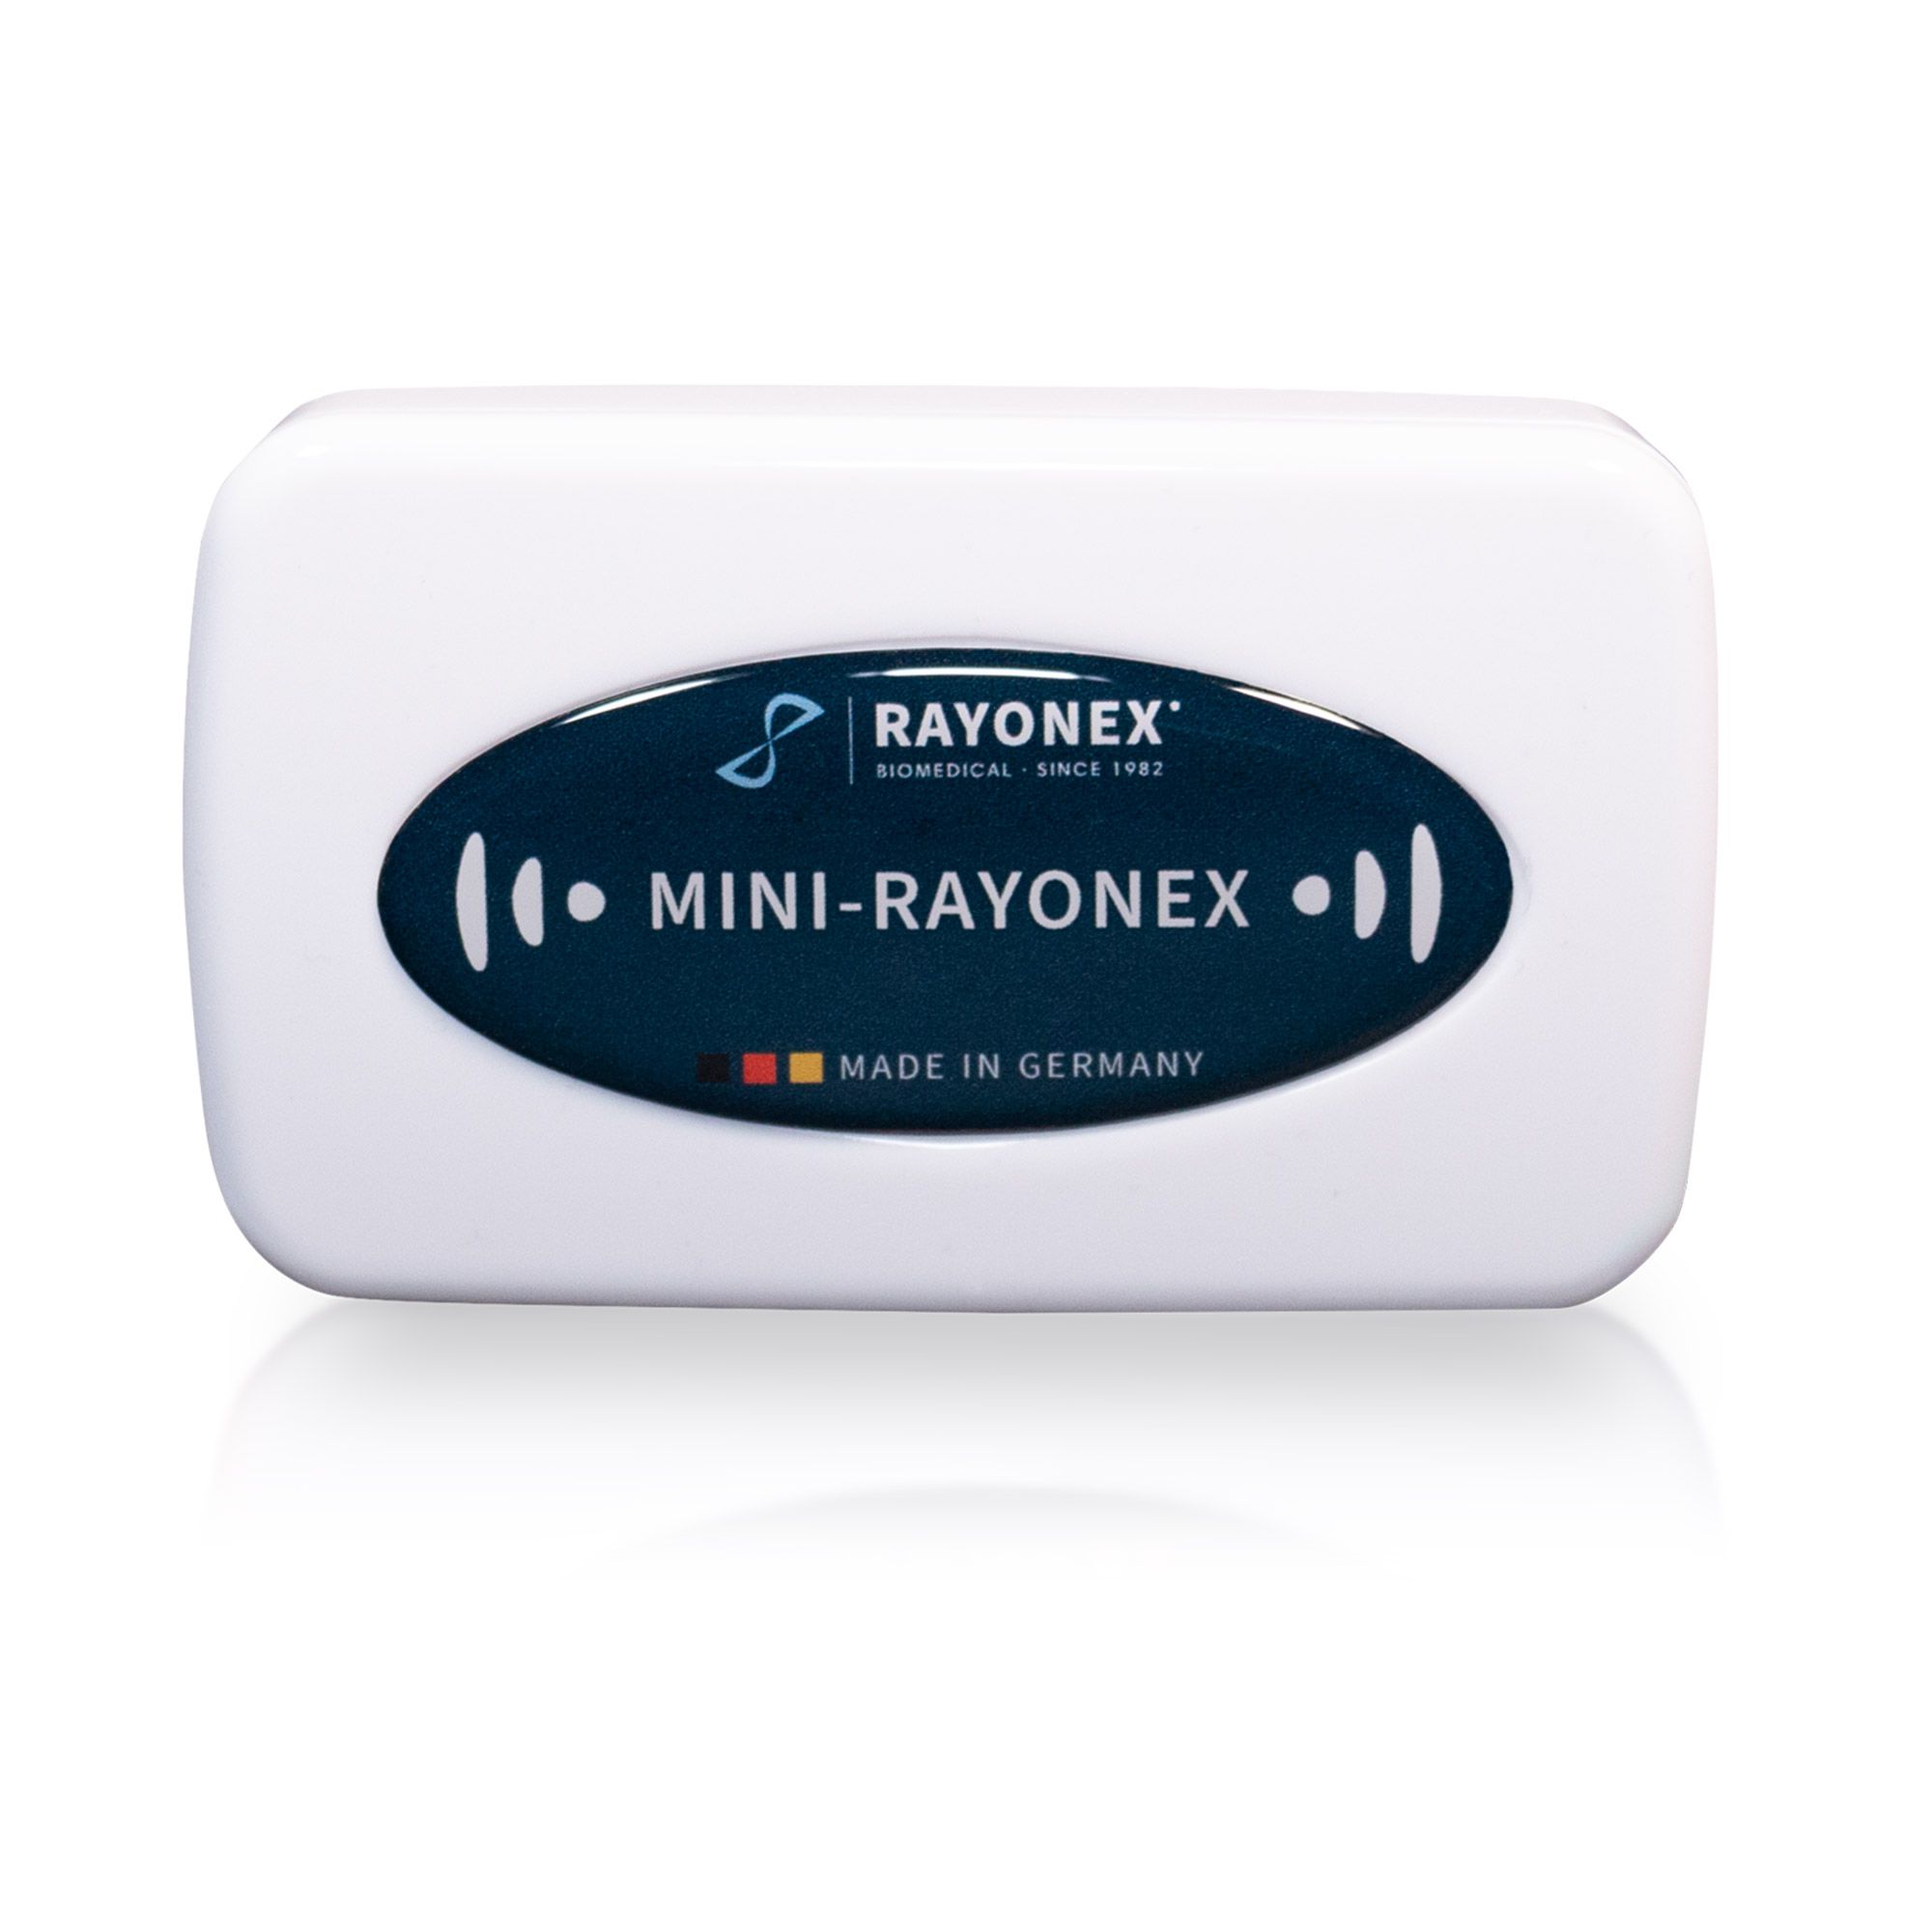 Mini-Rayonex